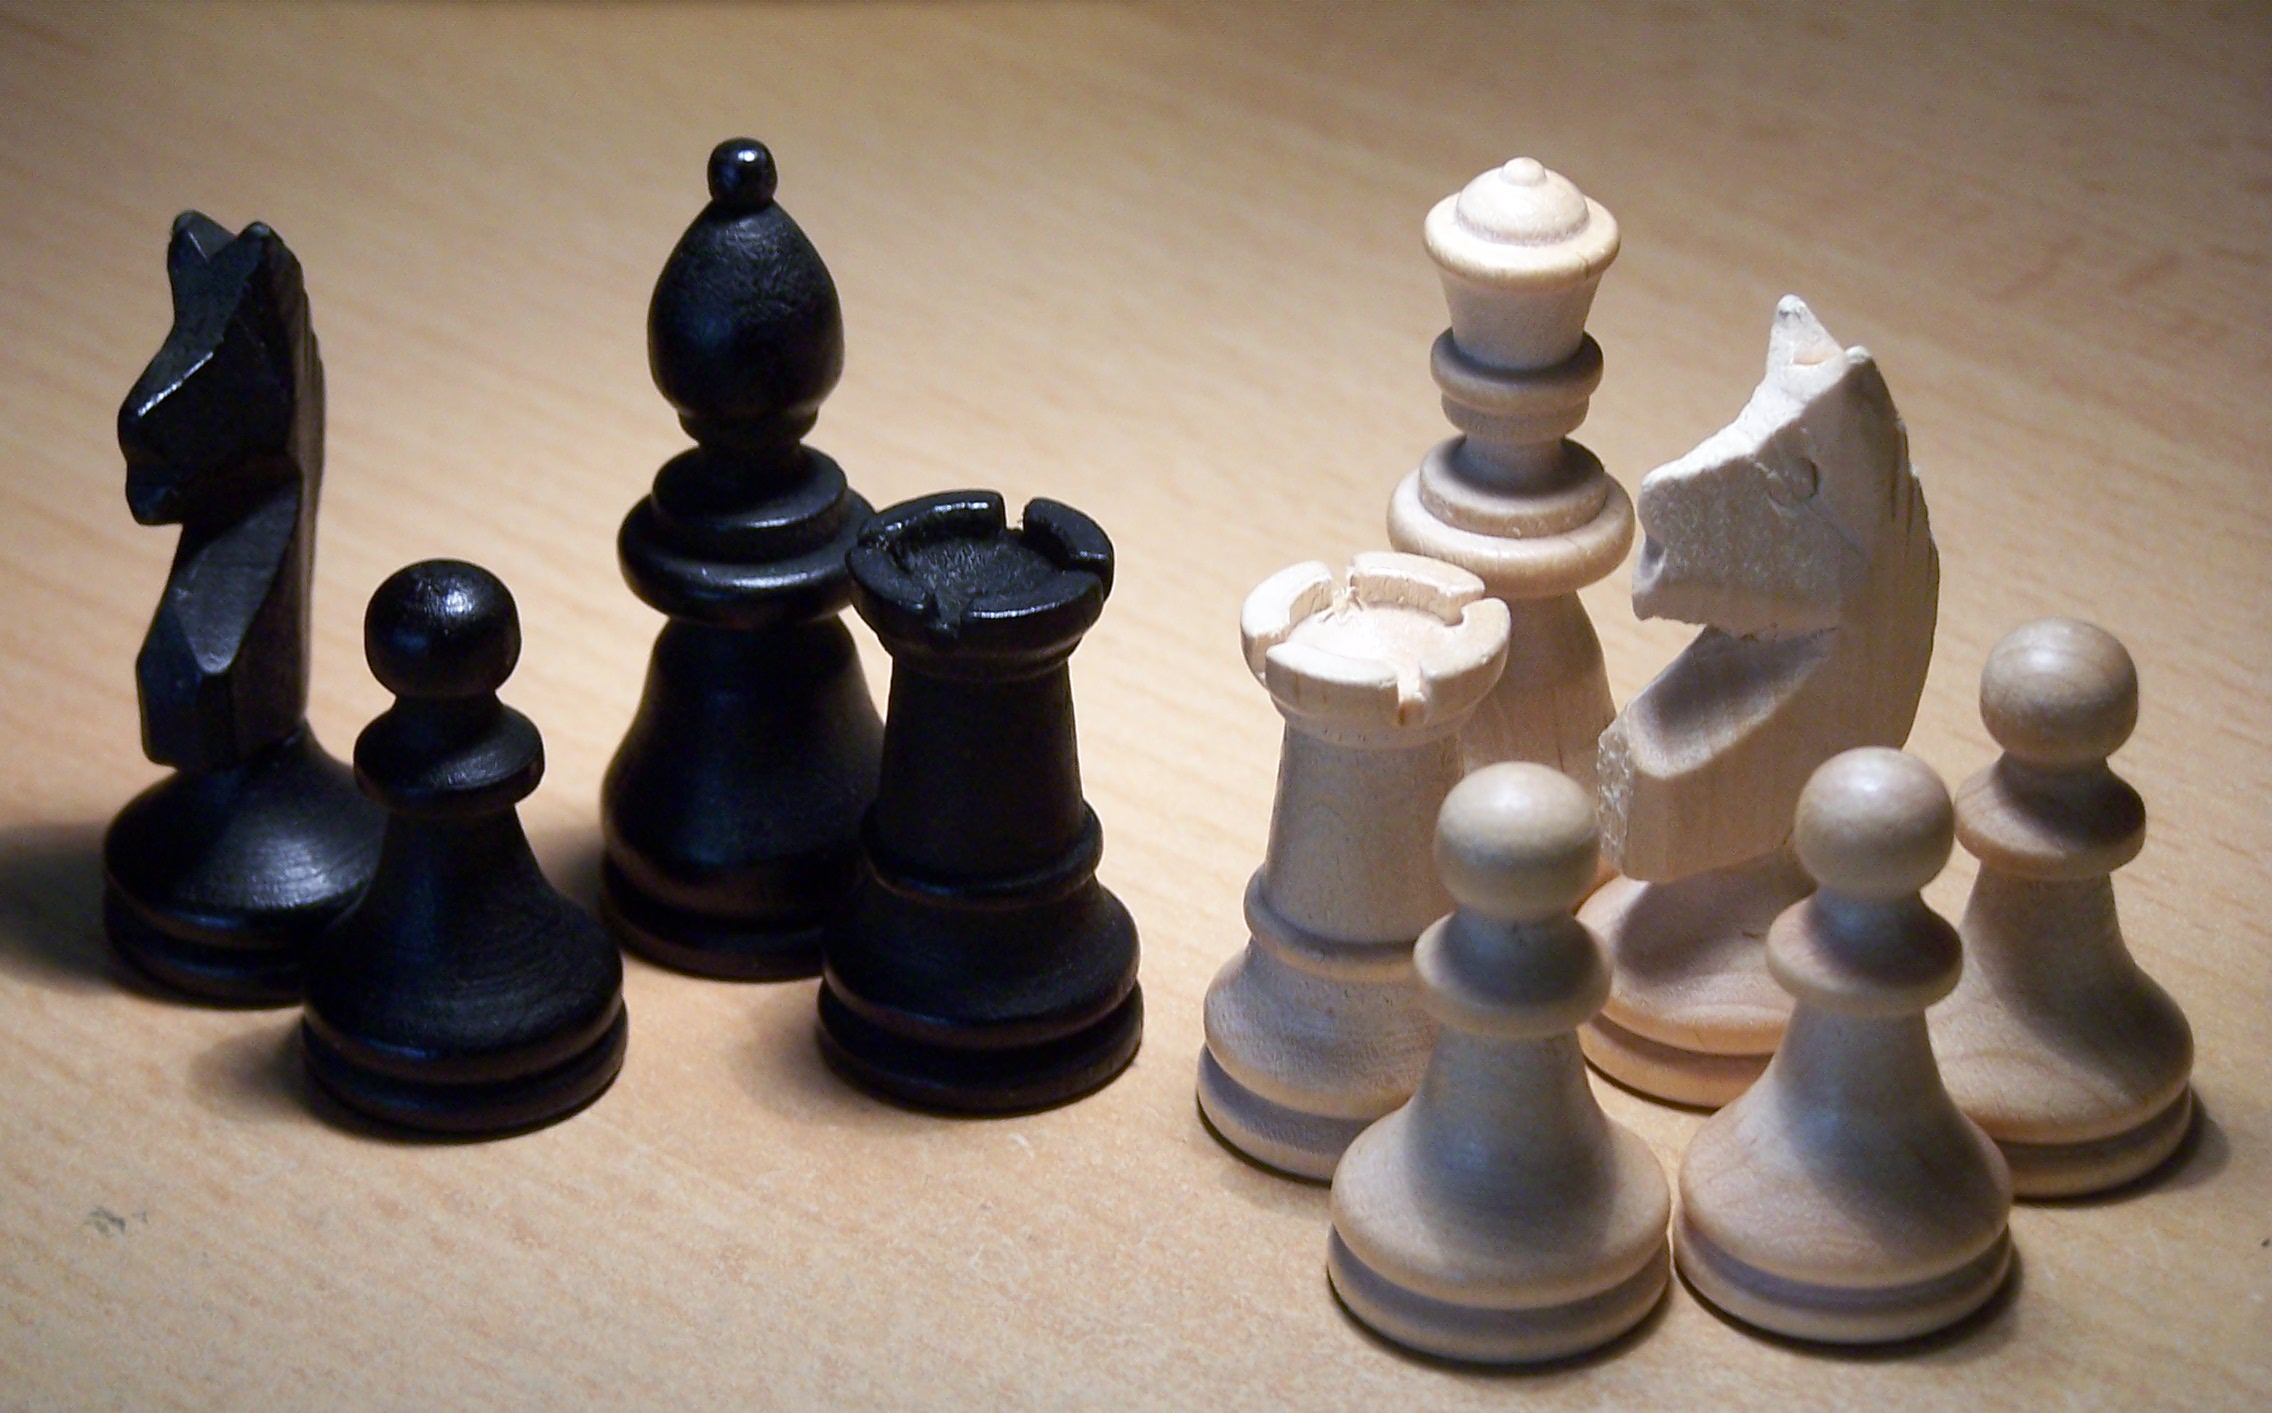 Fotografía: fichas de ajedrez para sumar y restar | Recurso educativo 47114